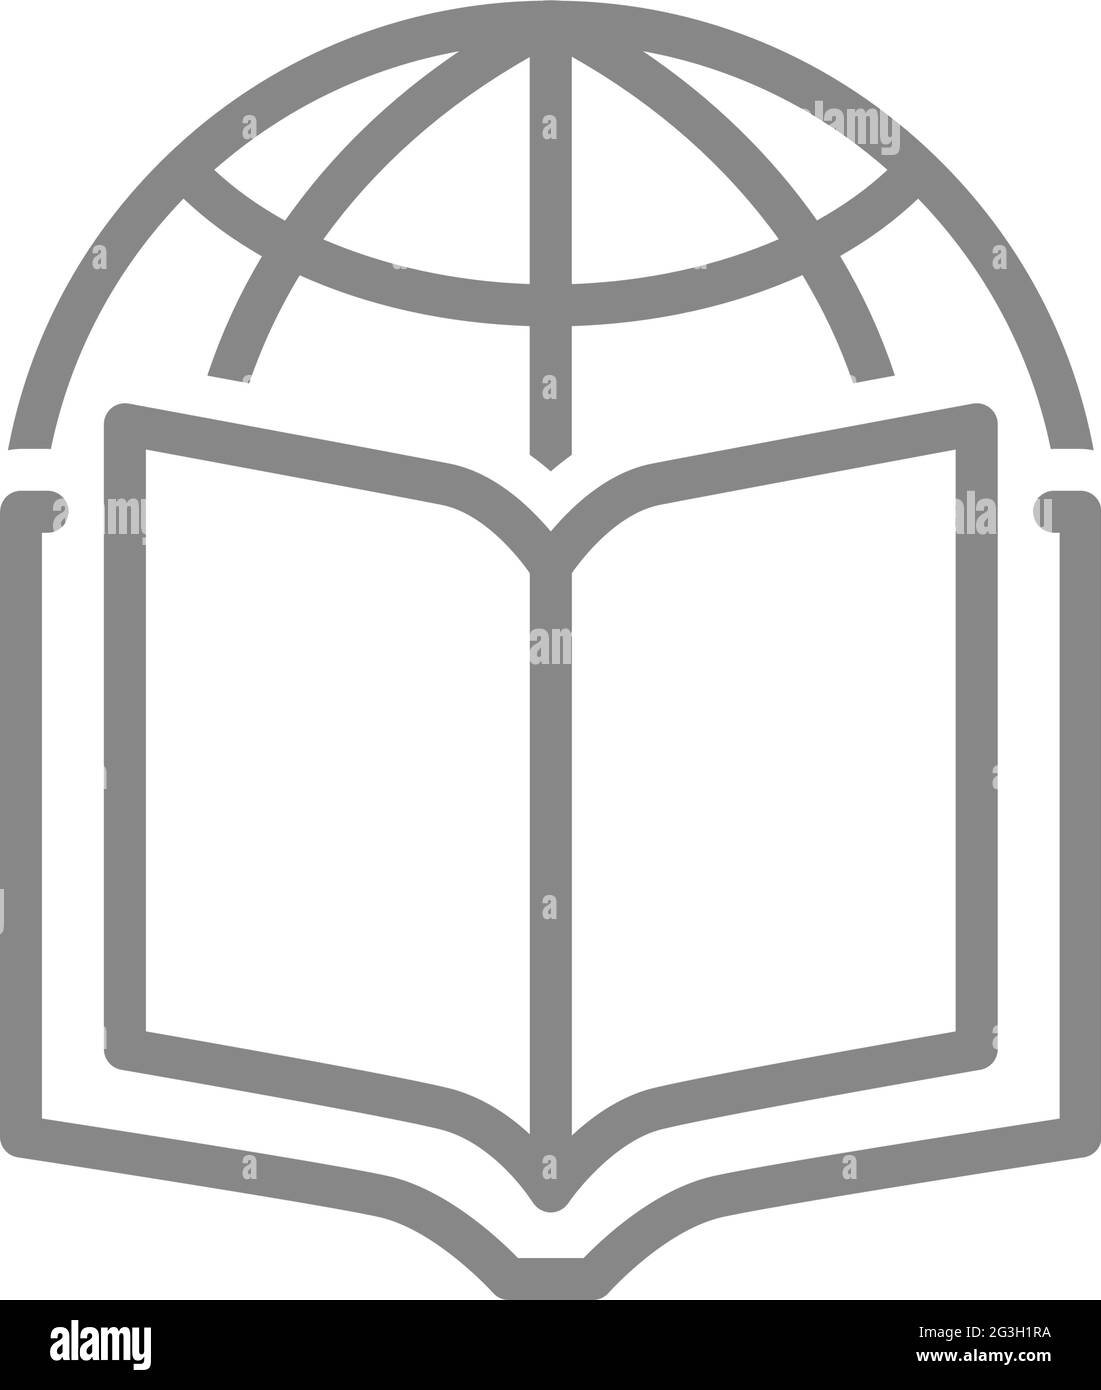 Buch mit Planetenlinesymbol öffnen. Globale Bibliothek, Online-Buchhandlung Symbol Stock Vektor